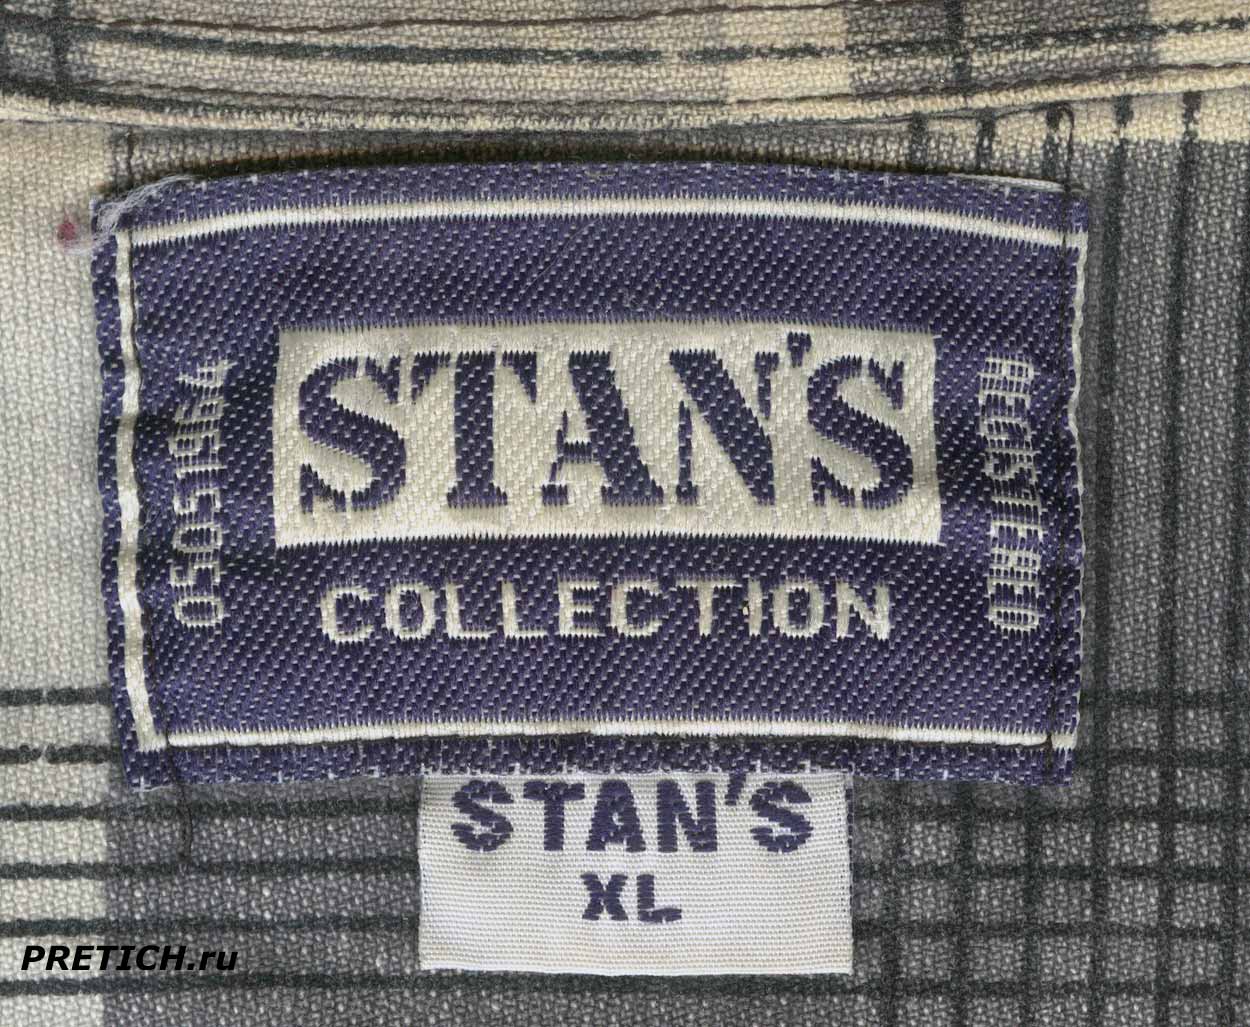 STAN'S Collection Registered 05051964 этикетка на рубашке из 1990-х годов